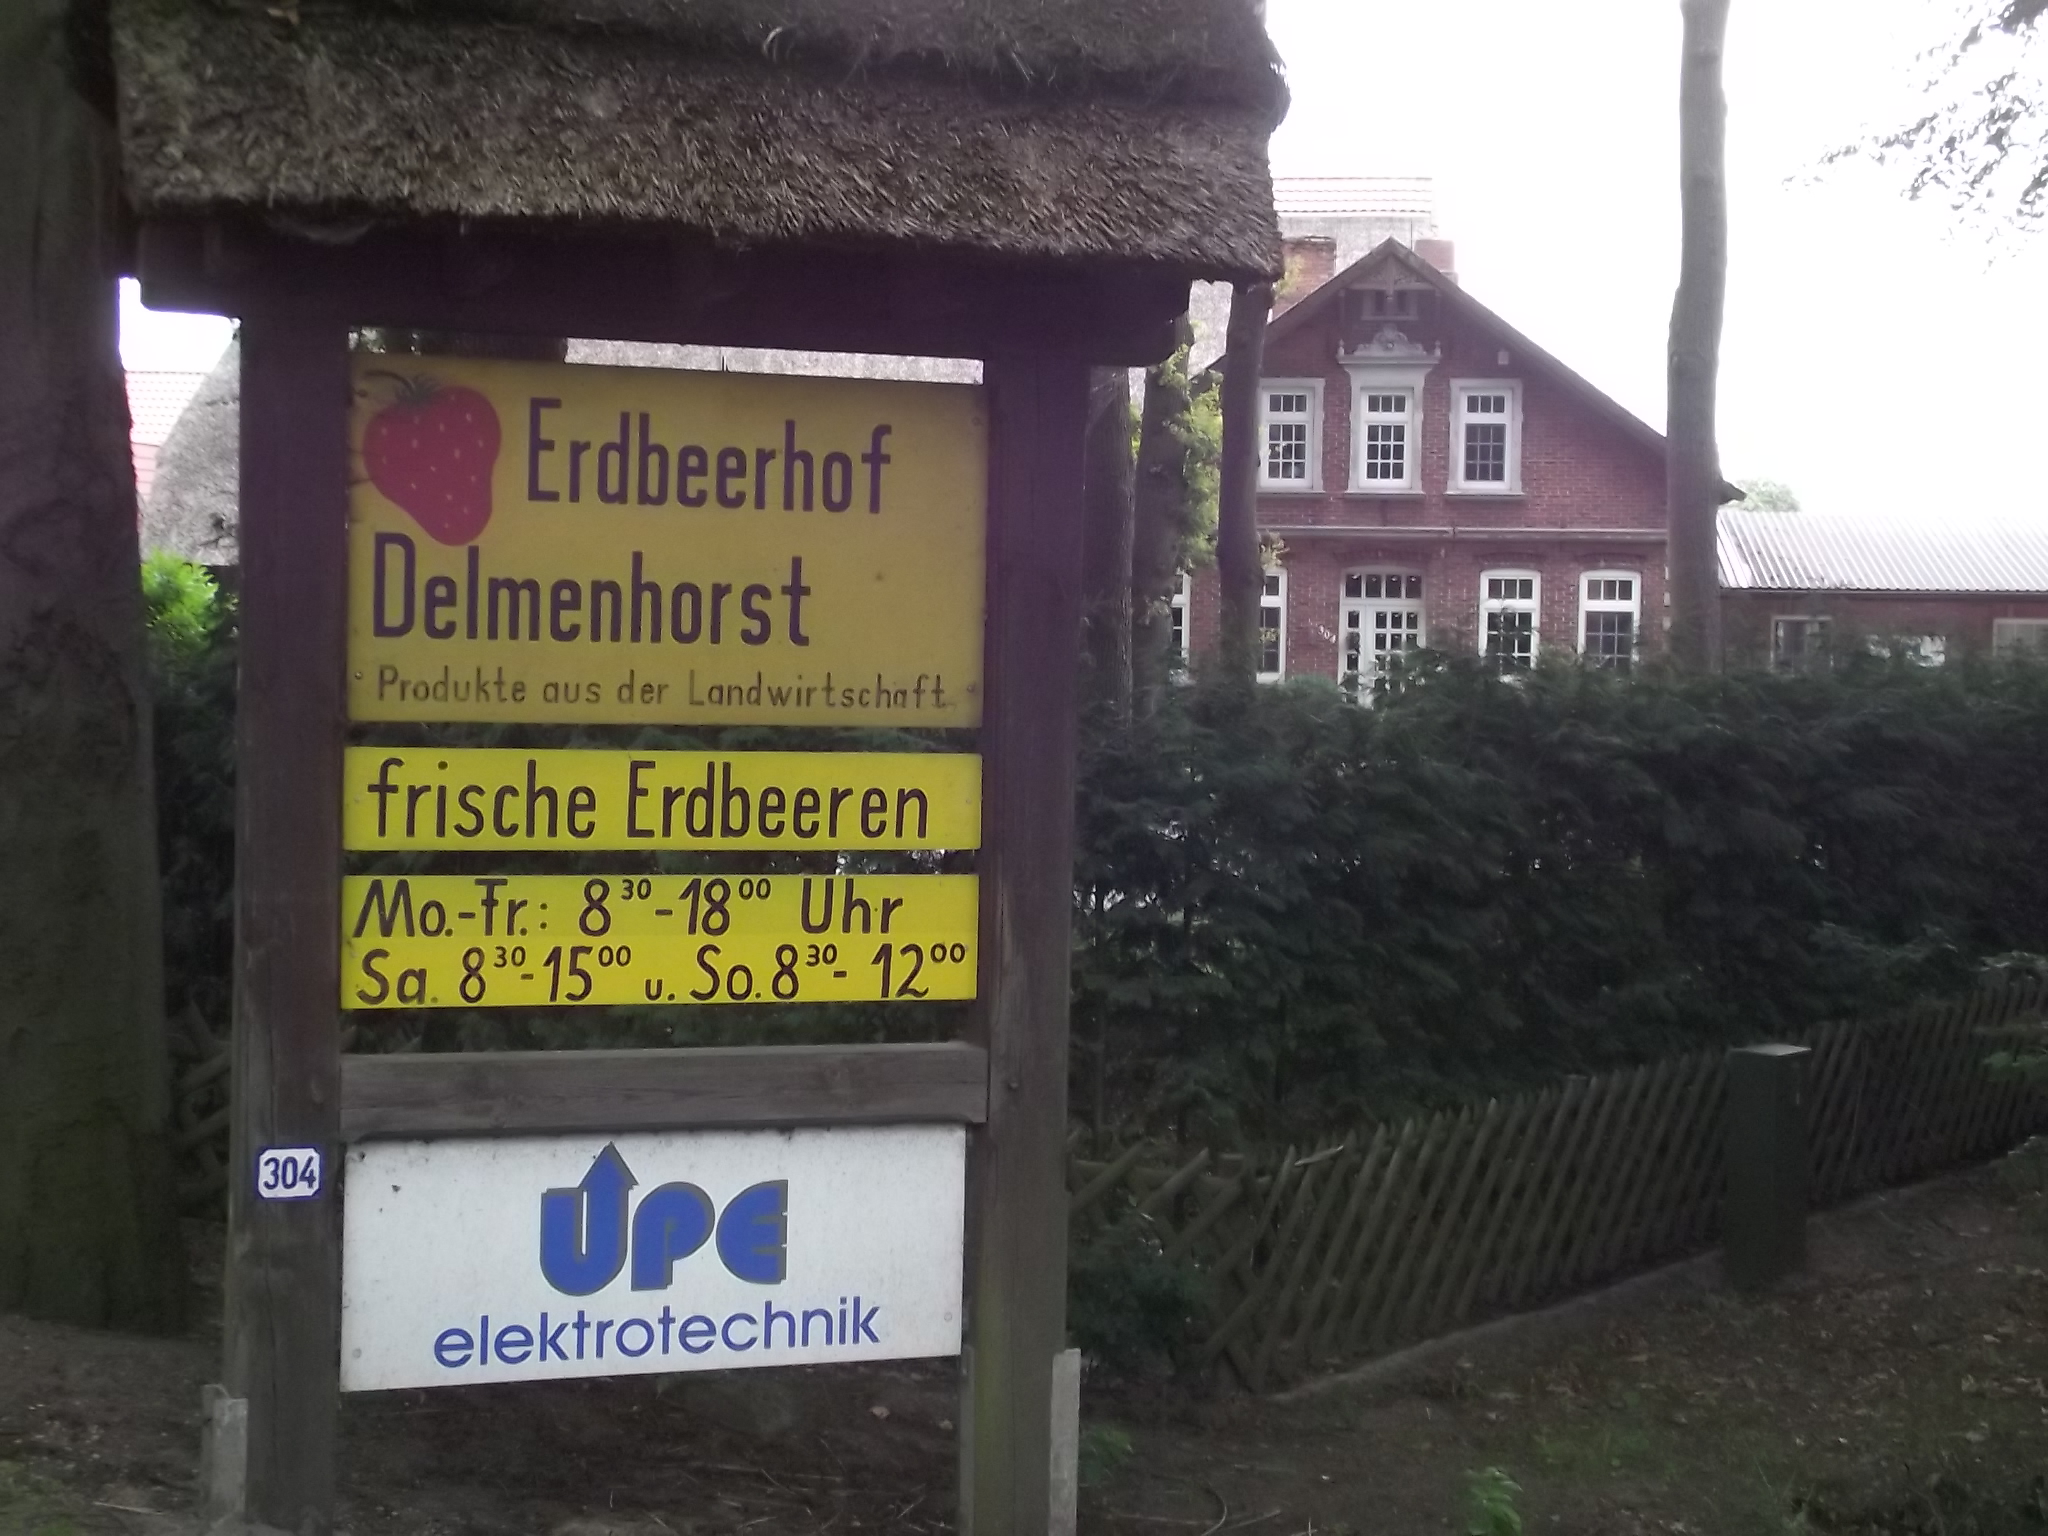 Erdbeerhof Delmenhorst